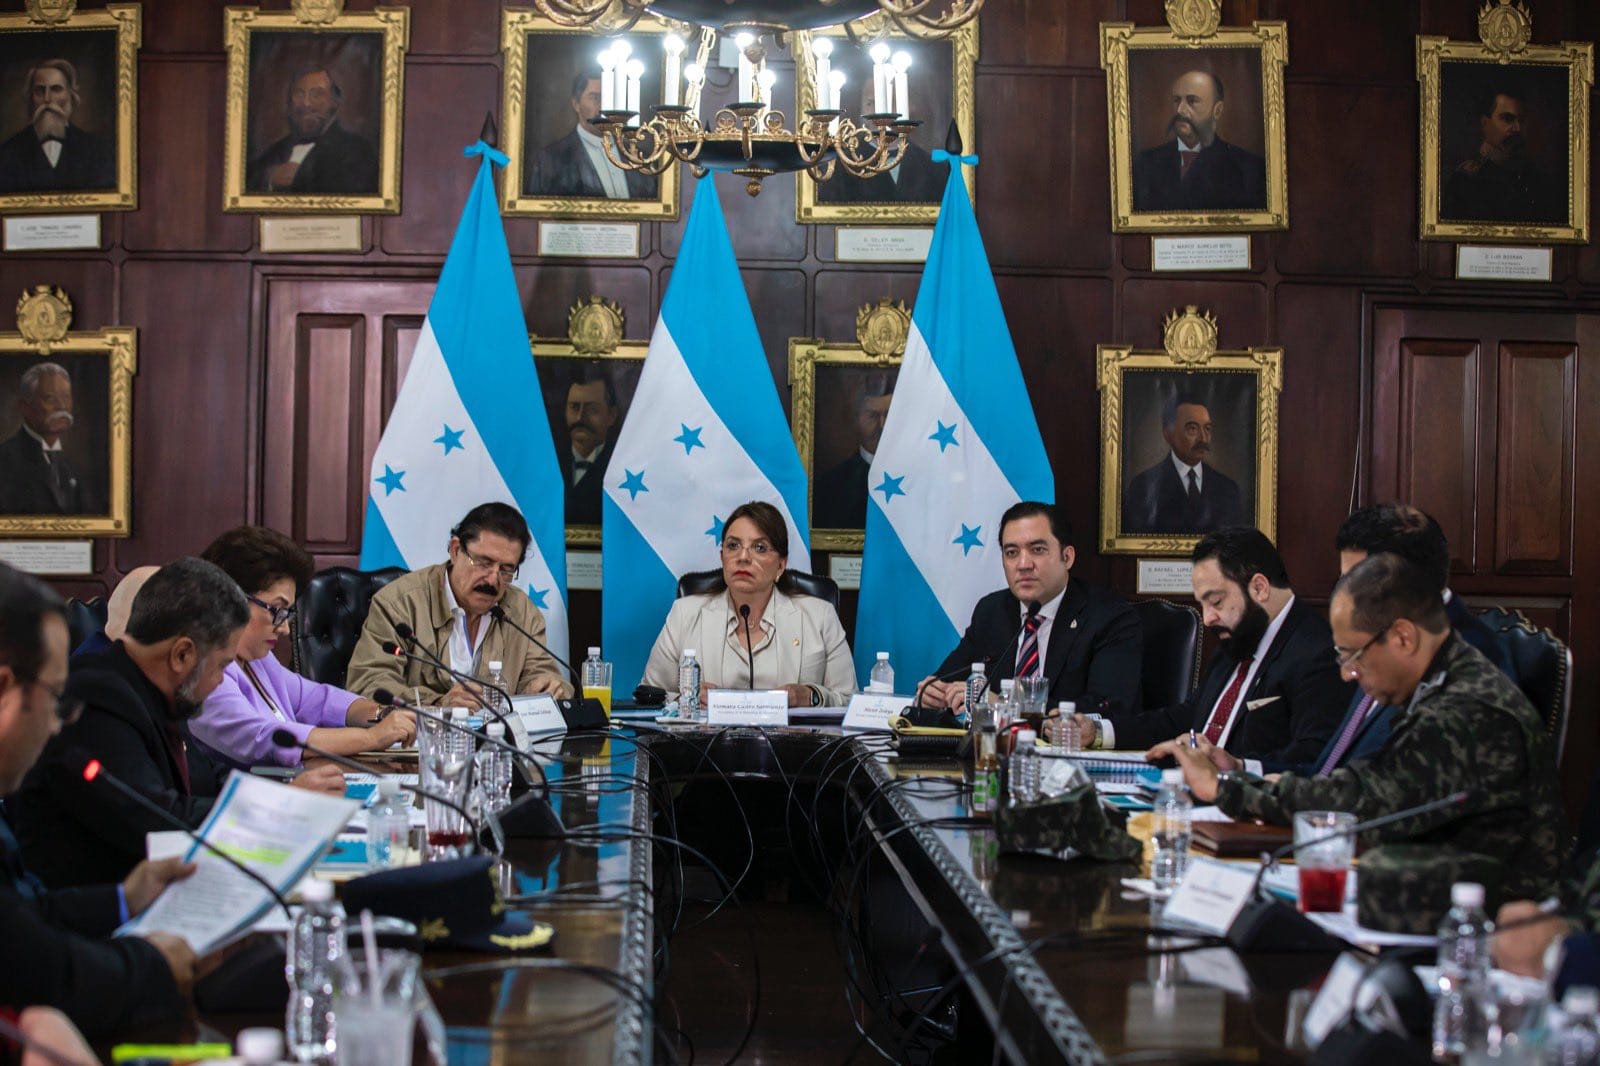 Presidenta Xiomara Castro en Consejo Nacional de Defensa y Seguridad aprueba la segunda etapa del Plan Nacional de Seguridad denominado Solución Contra el Crimen